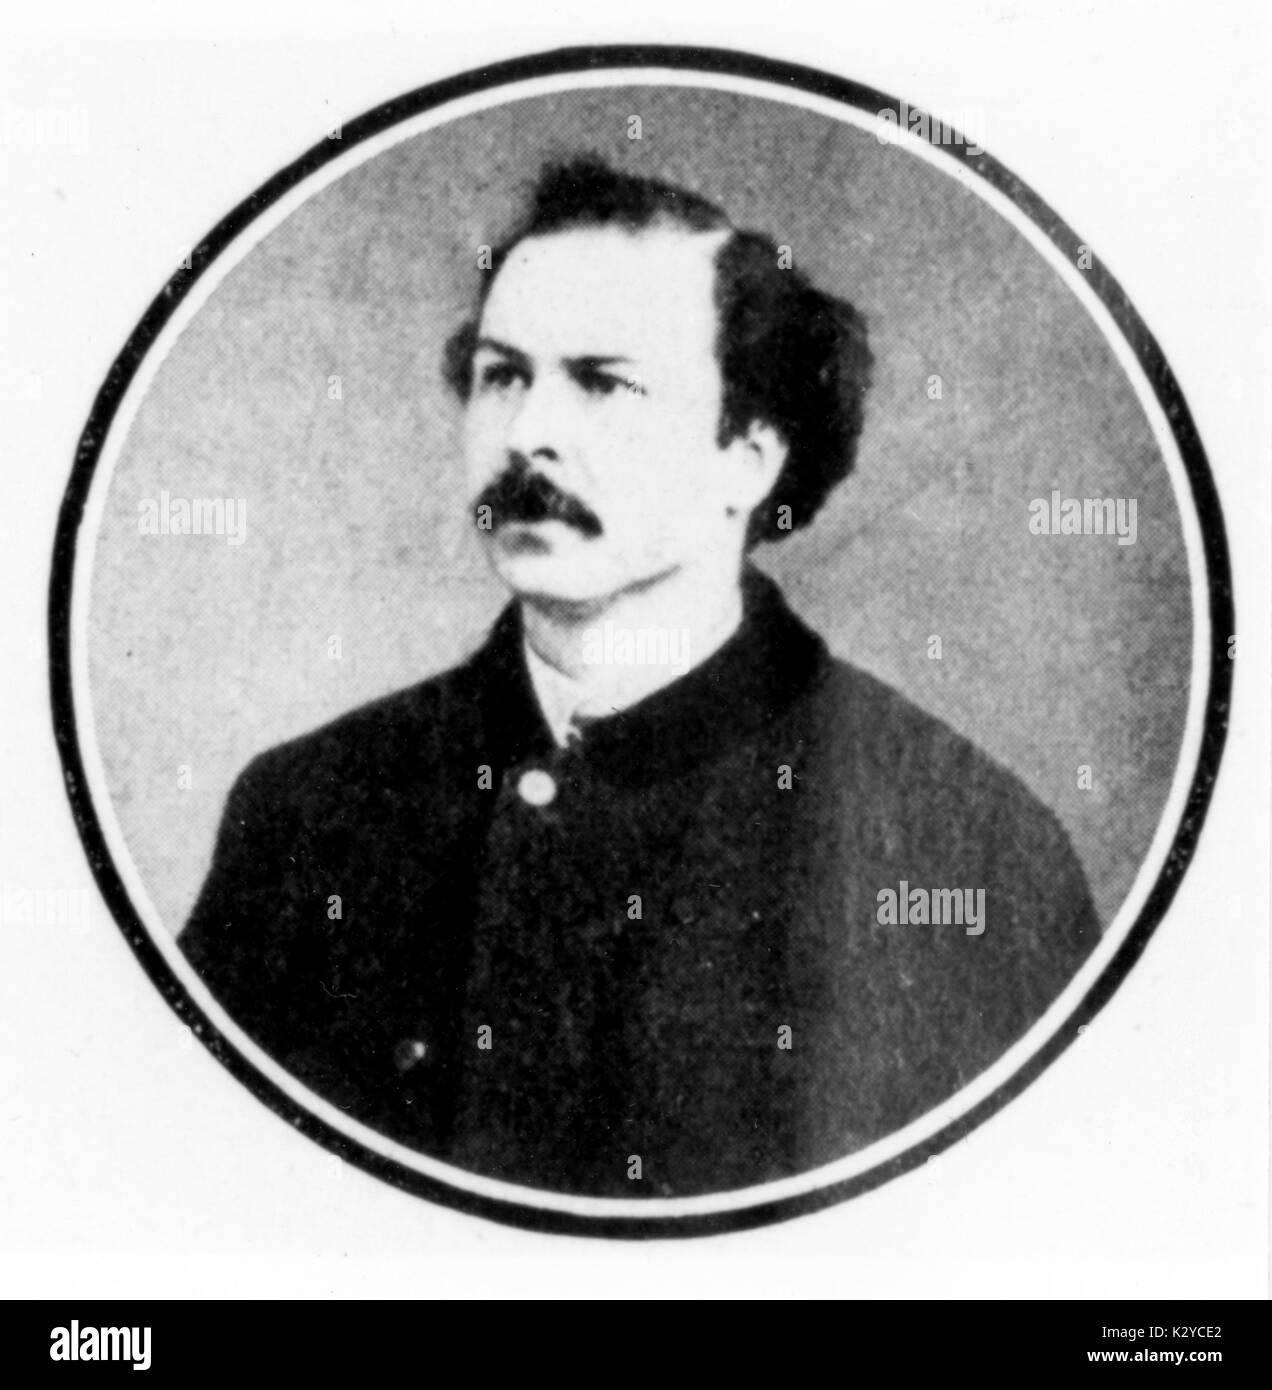 MAILHAC, Henri libretista francés (1831-1897). Colaboró con L Halévy escribir libretos de Offenbach, Delibes y Bizet Foto de stock